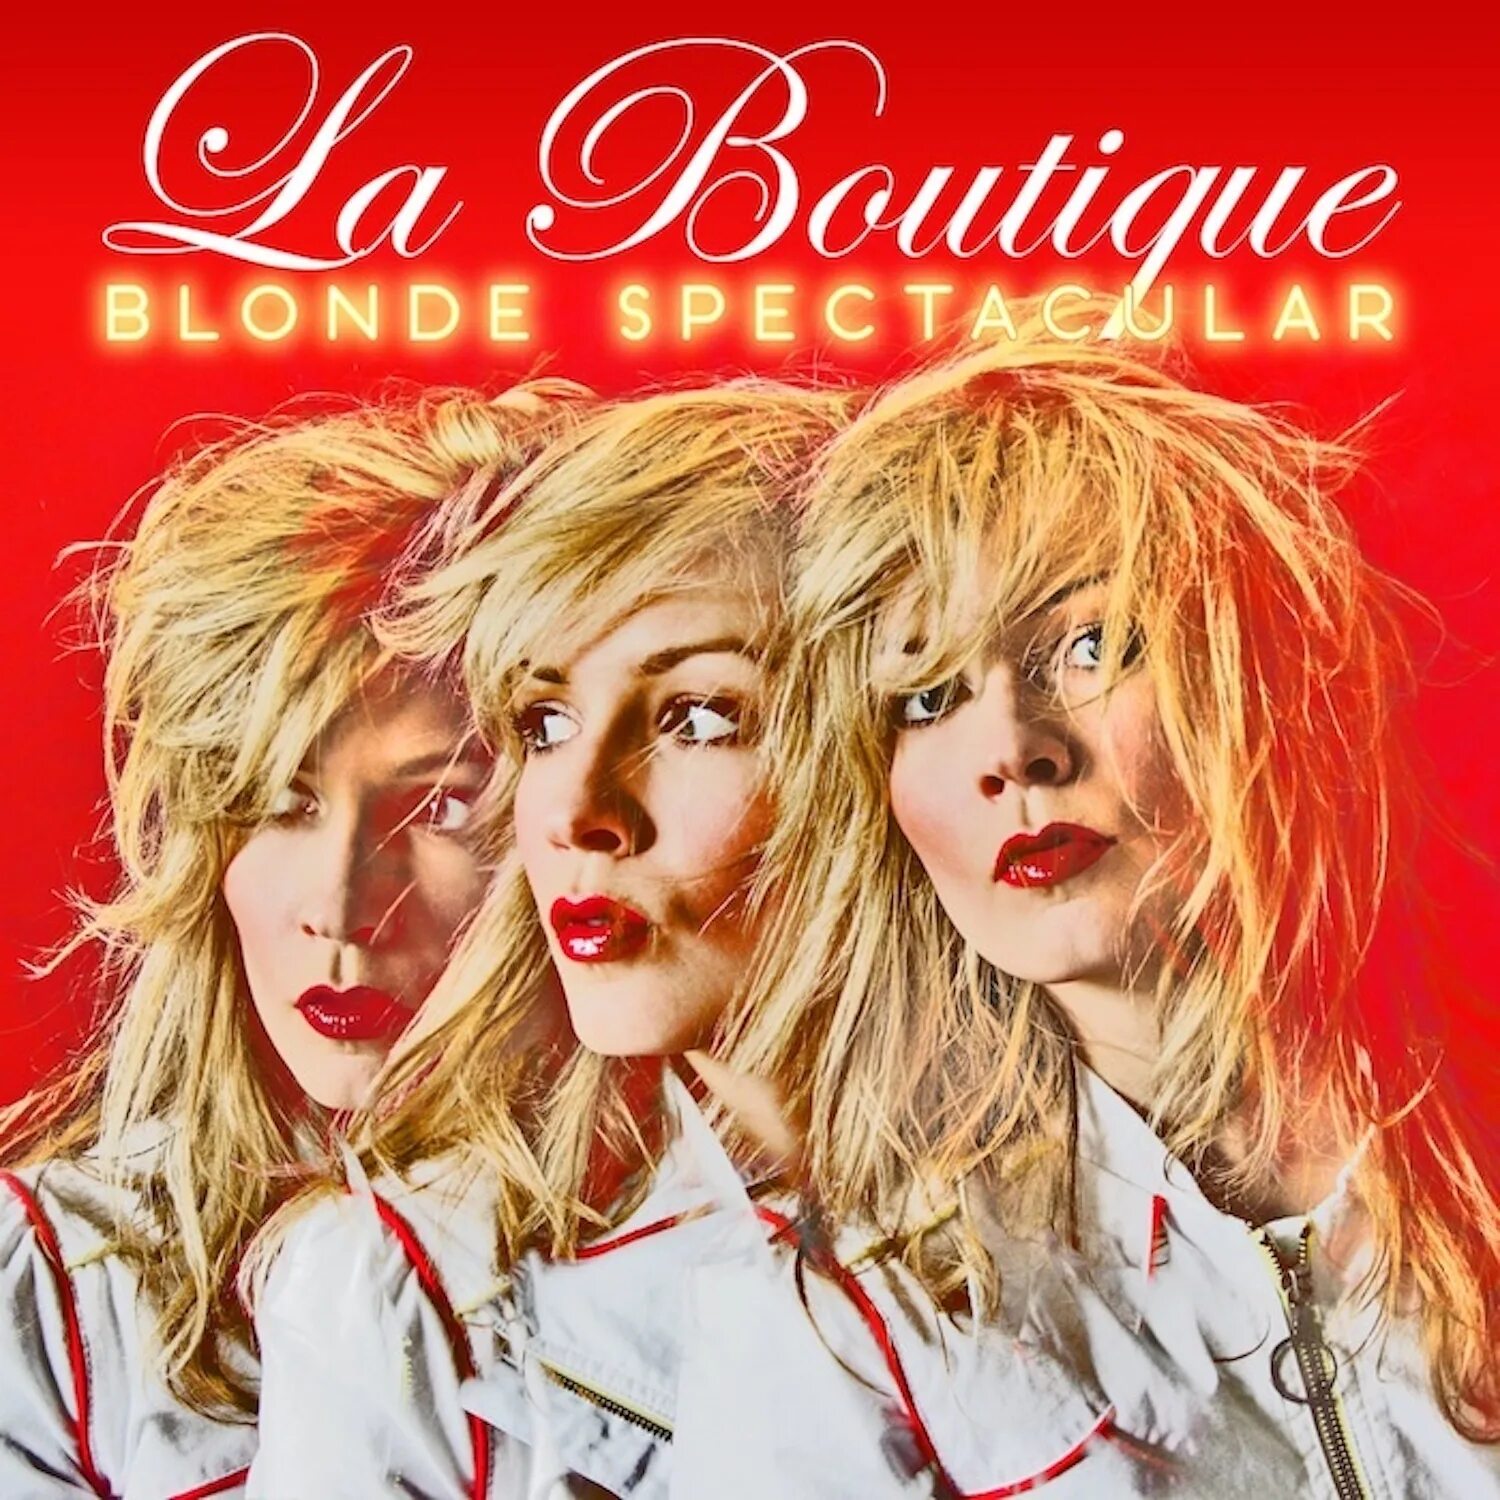 Dead blonde альбомы. Blonde альбом. Blondie альбомы. Blondine песни. The blondes песни.